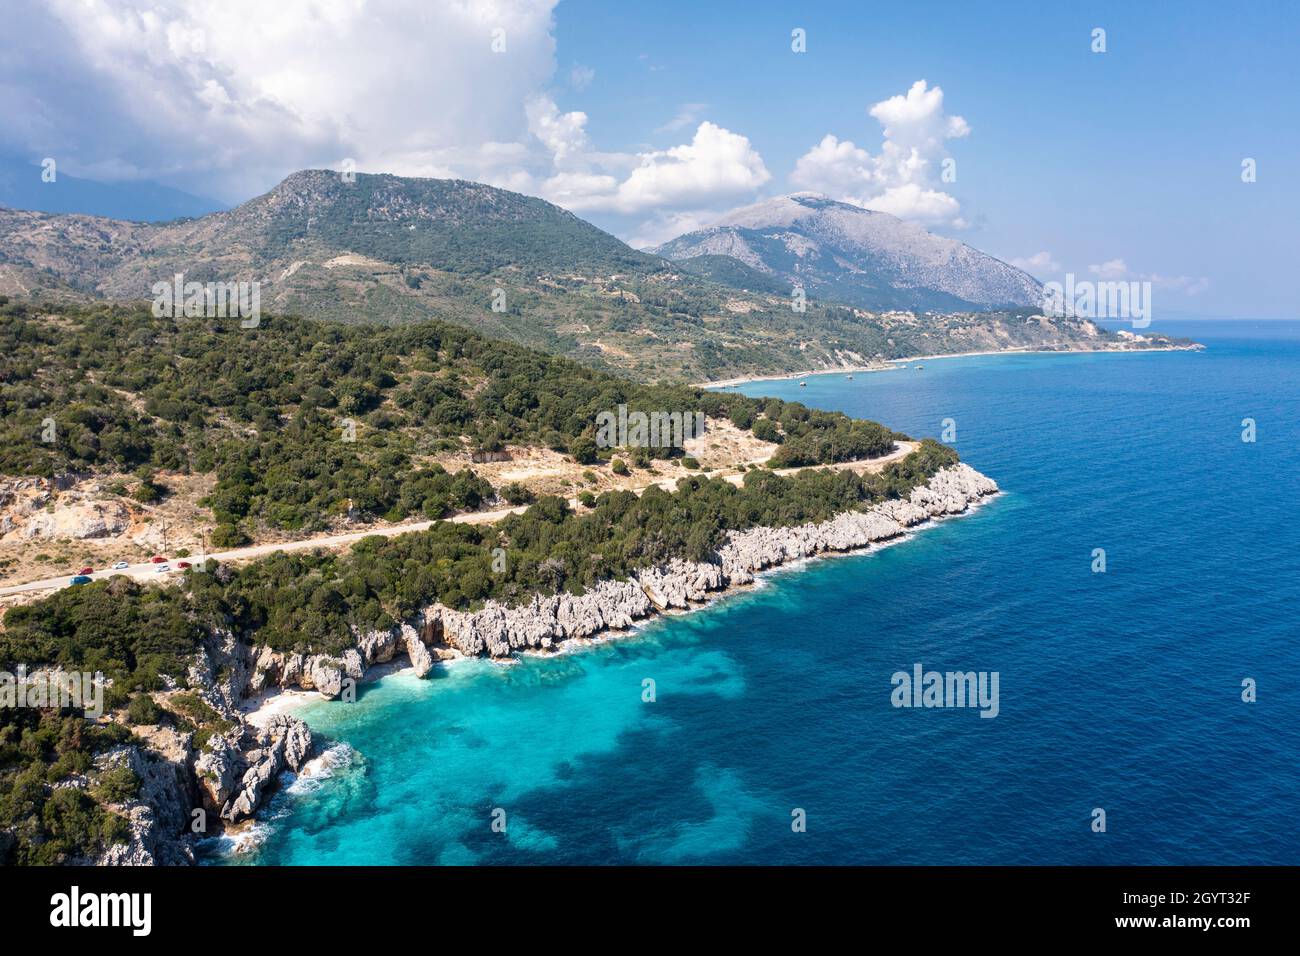 Vista costera aérea que muestra la playa de Kako Lagadi, entre Poros y Skala en la costa este de Kefalonia, Islas Jónicas, Grecia Foto de stock